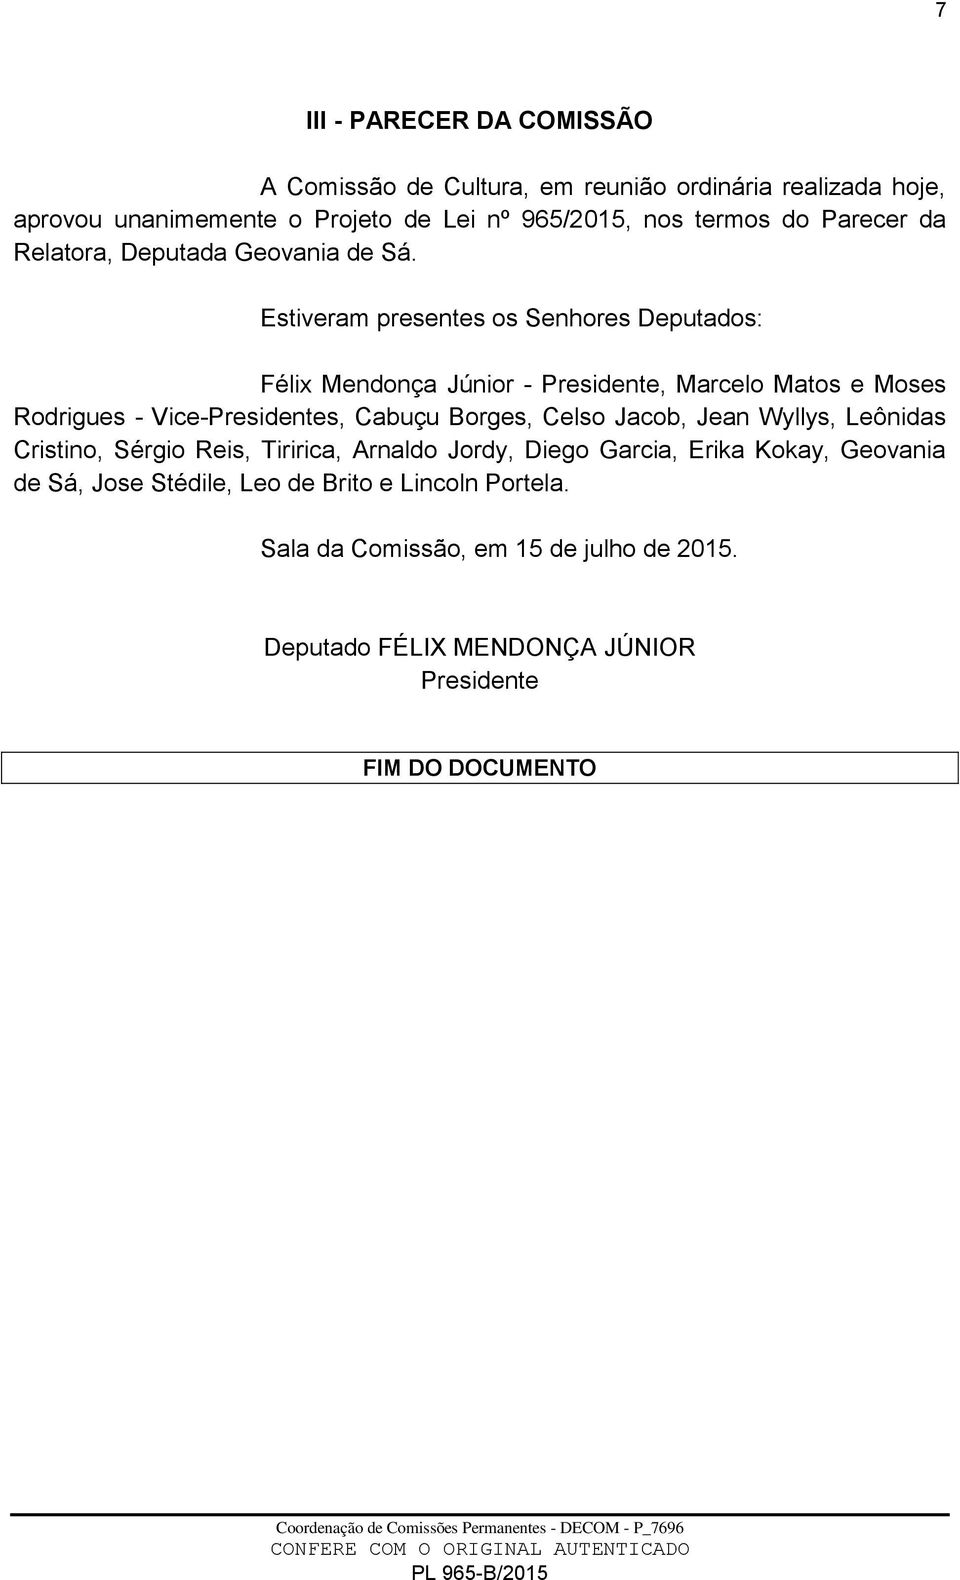 Estiveram presentes os Senhores Deputados: Félix Mendonça Júnior - Presidente, Marcelo Matos e Moses Rodrigues - Vice-Presidentes, Cabuçu Borges, Celso